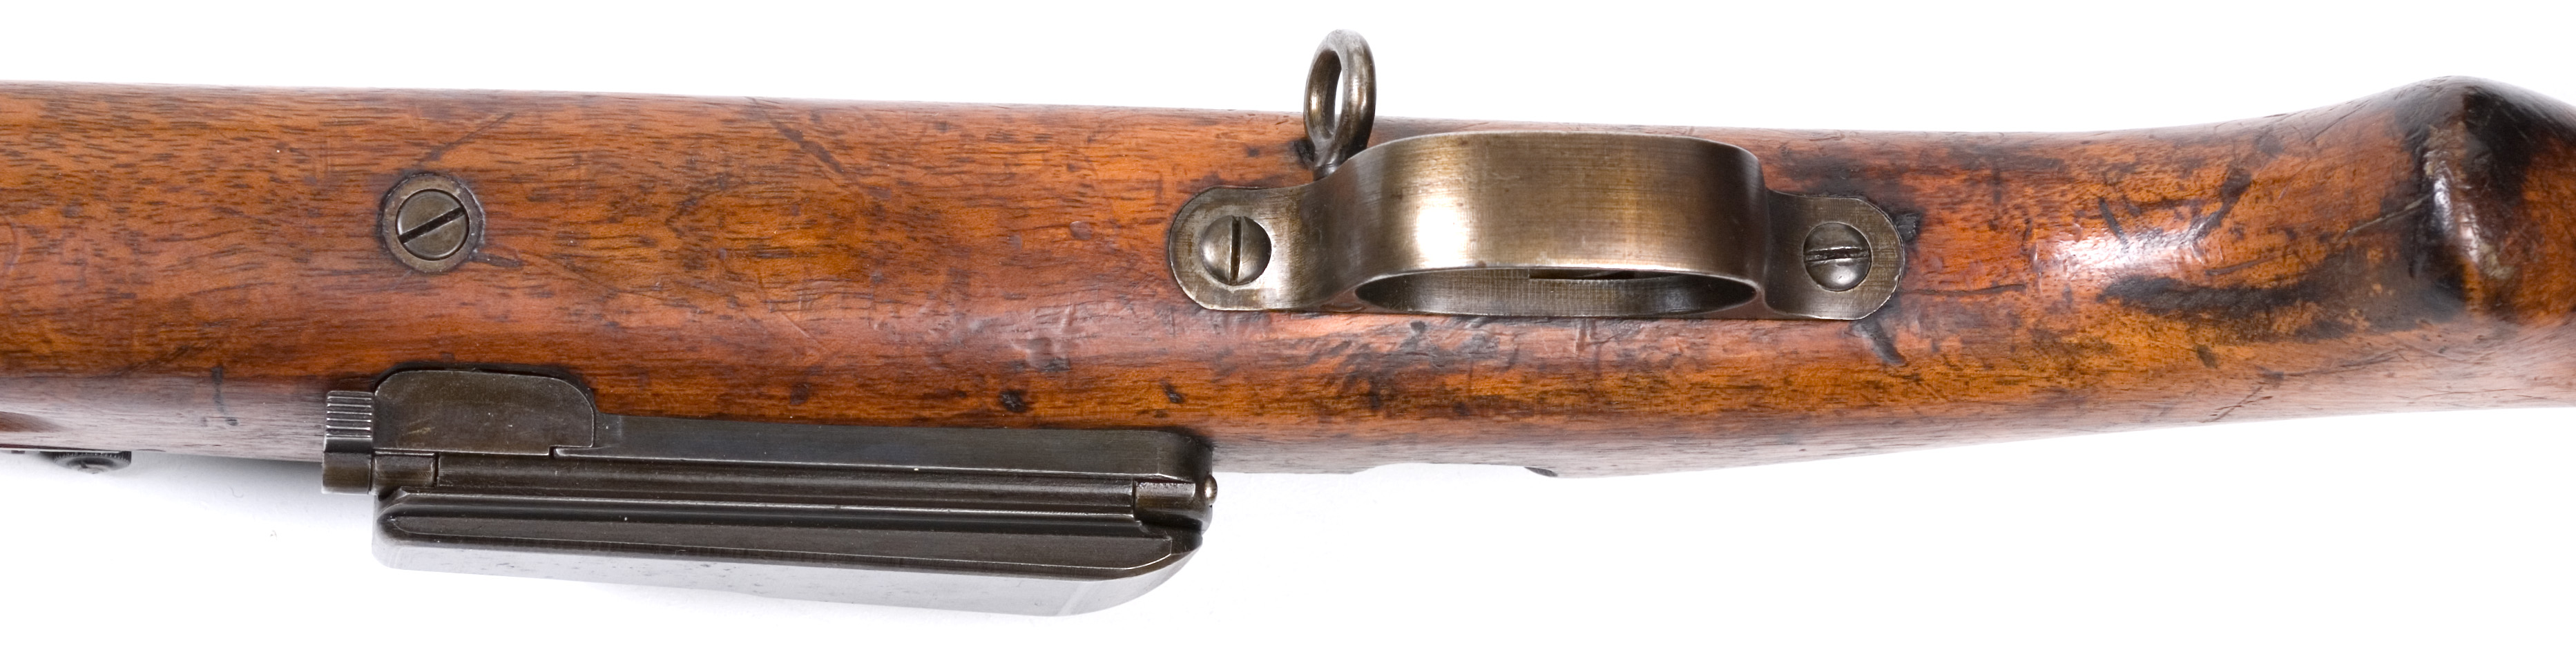 ./guns/rifle/bilder/Rifle-Kongsberg-Krag-M1912-prove-11-7.jpg